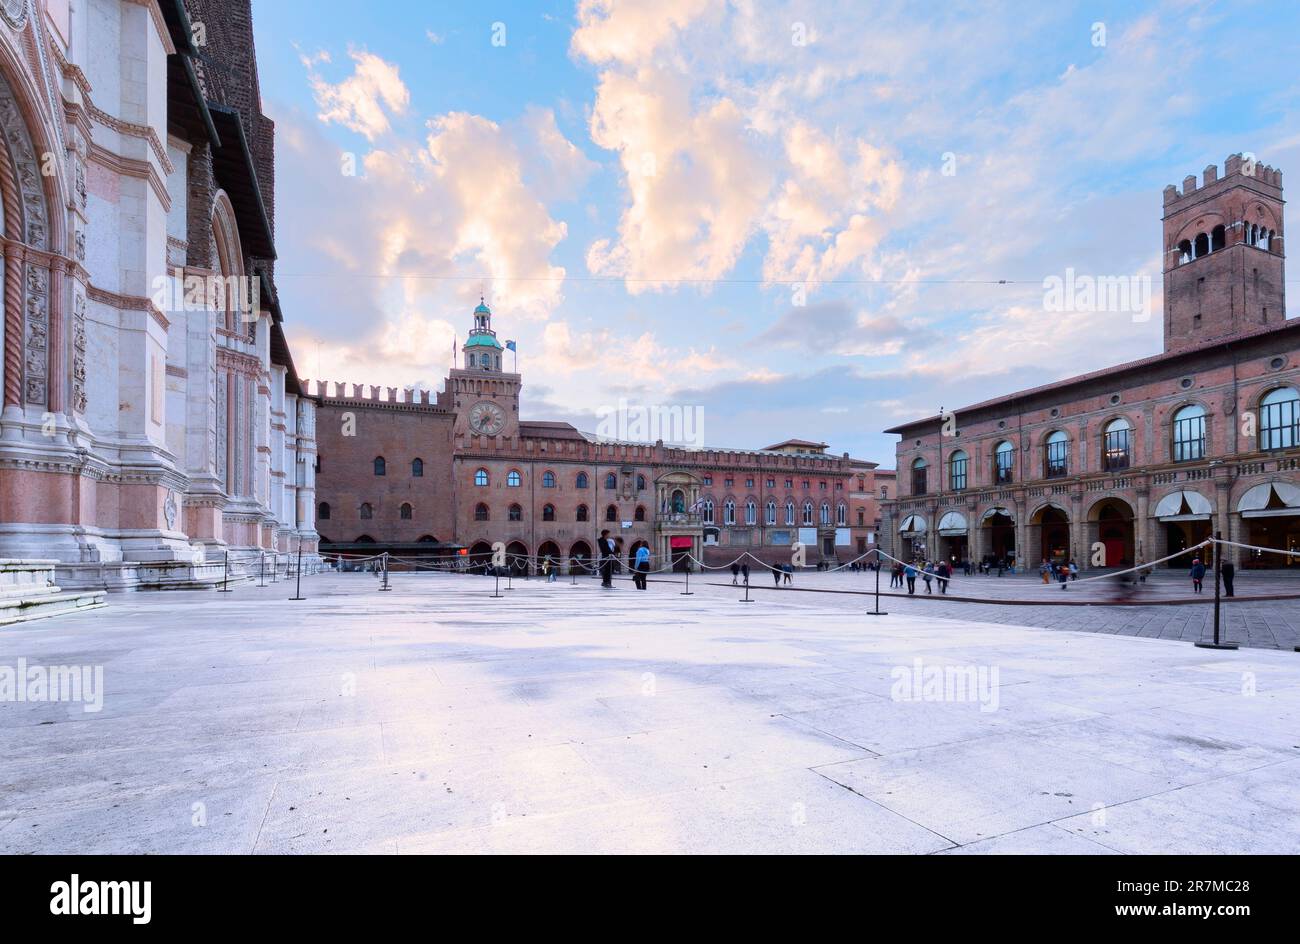 Bologna, Italia. Piazza maggiore con Torre dell'Orologio e Torre dell'Arengo, punto di riferimento della provincia storica dell'Emilia-Romagna Foto Stock